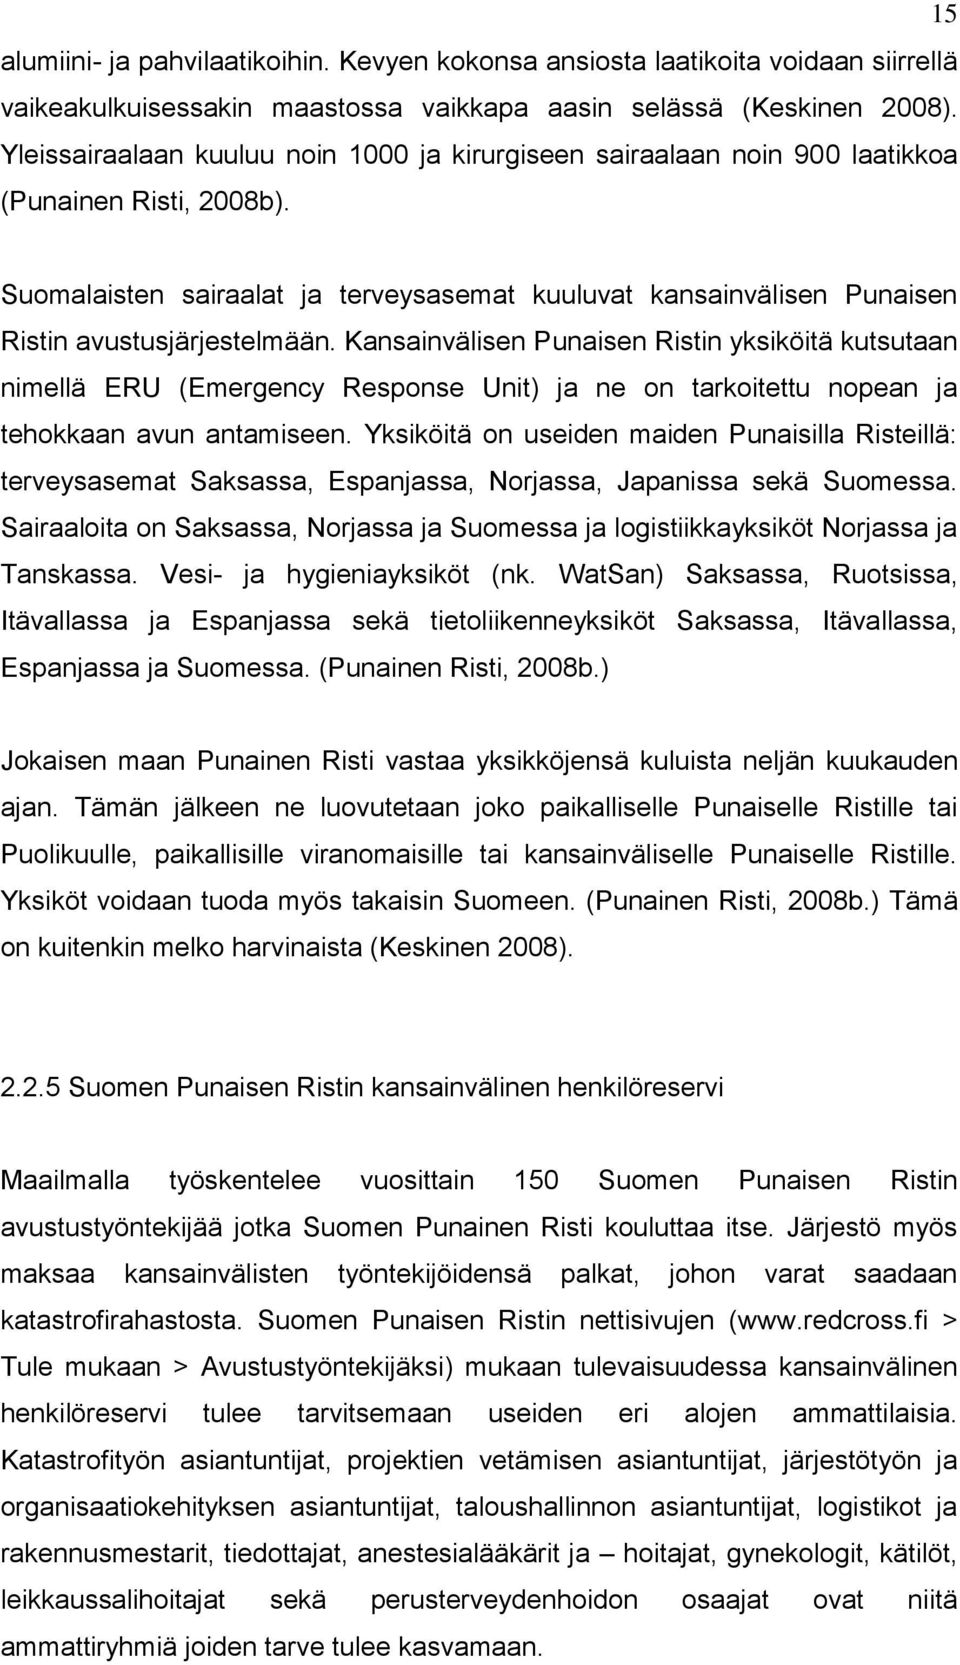 Suomalaisten sairaalat ja terveysasemat kuuluvat kansainvälisen Punaisen Ristin avustusjärjestelmään.